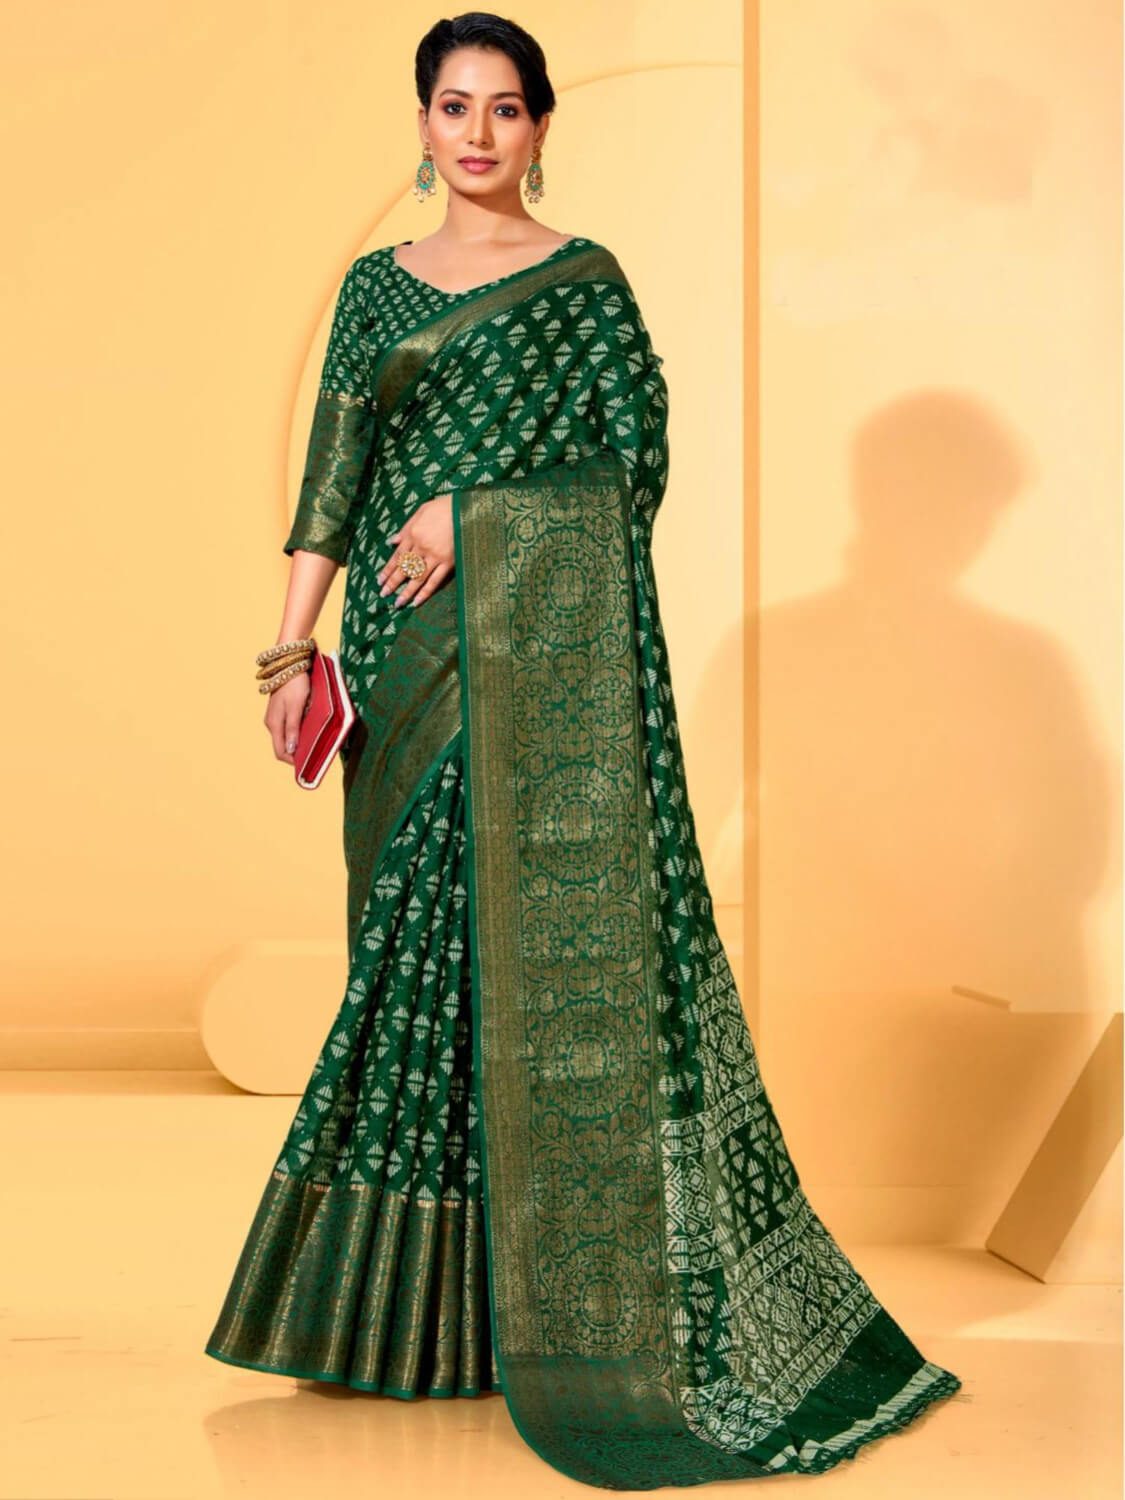 girl in dark green saree